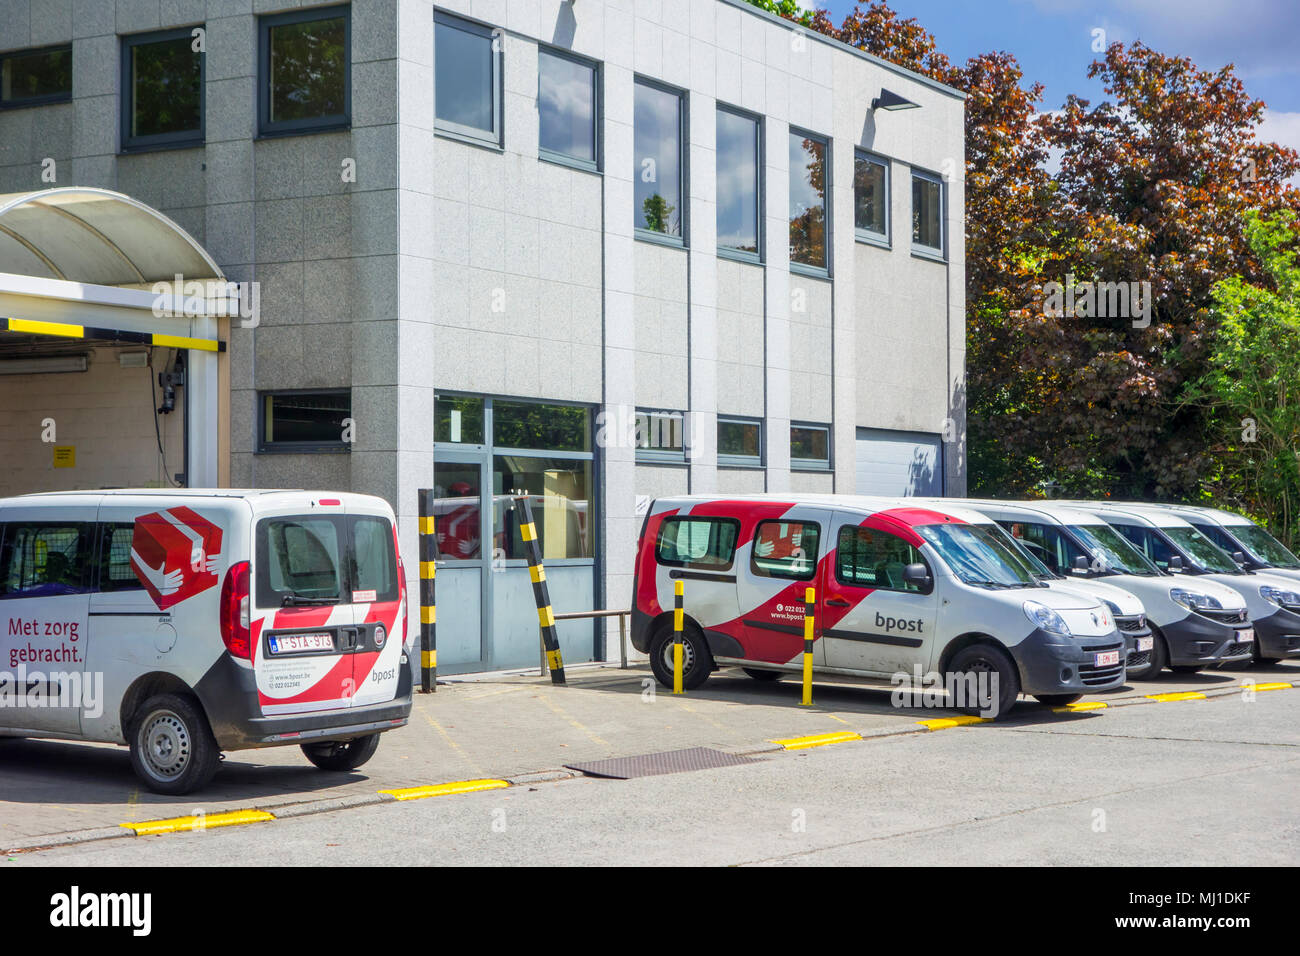 Rouge-blanc livraison poste voitures garées devant un bureau de poste Bpost, société belge responsable de la livraison de courrier national et international Banque D'Images